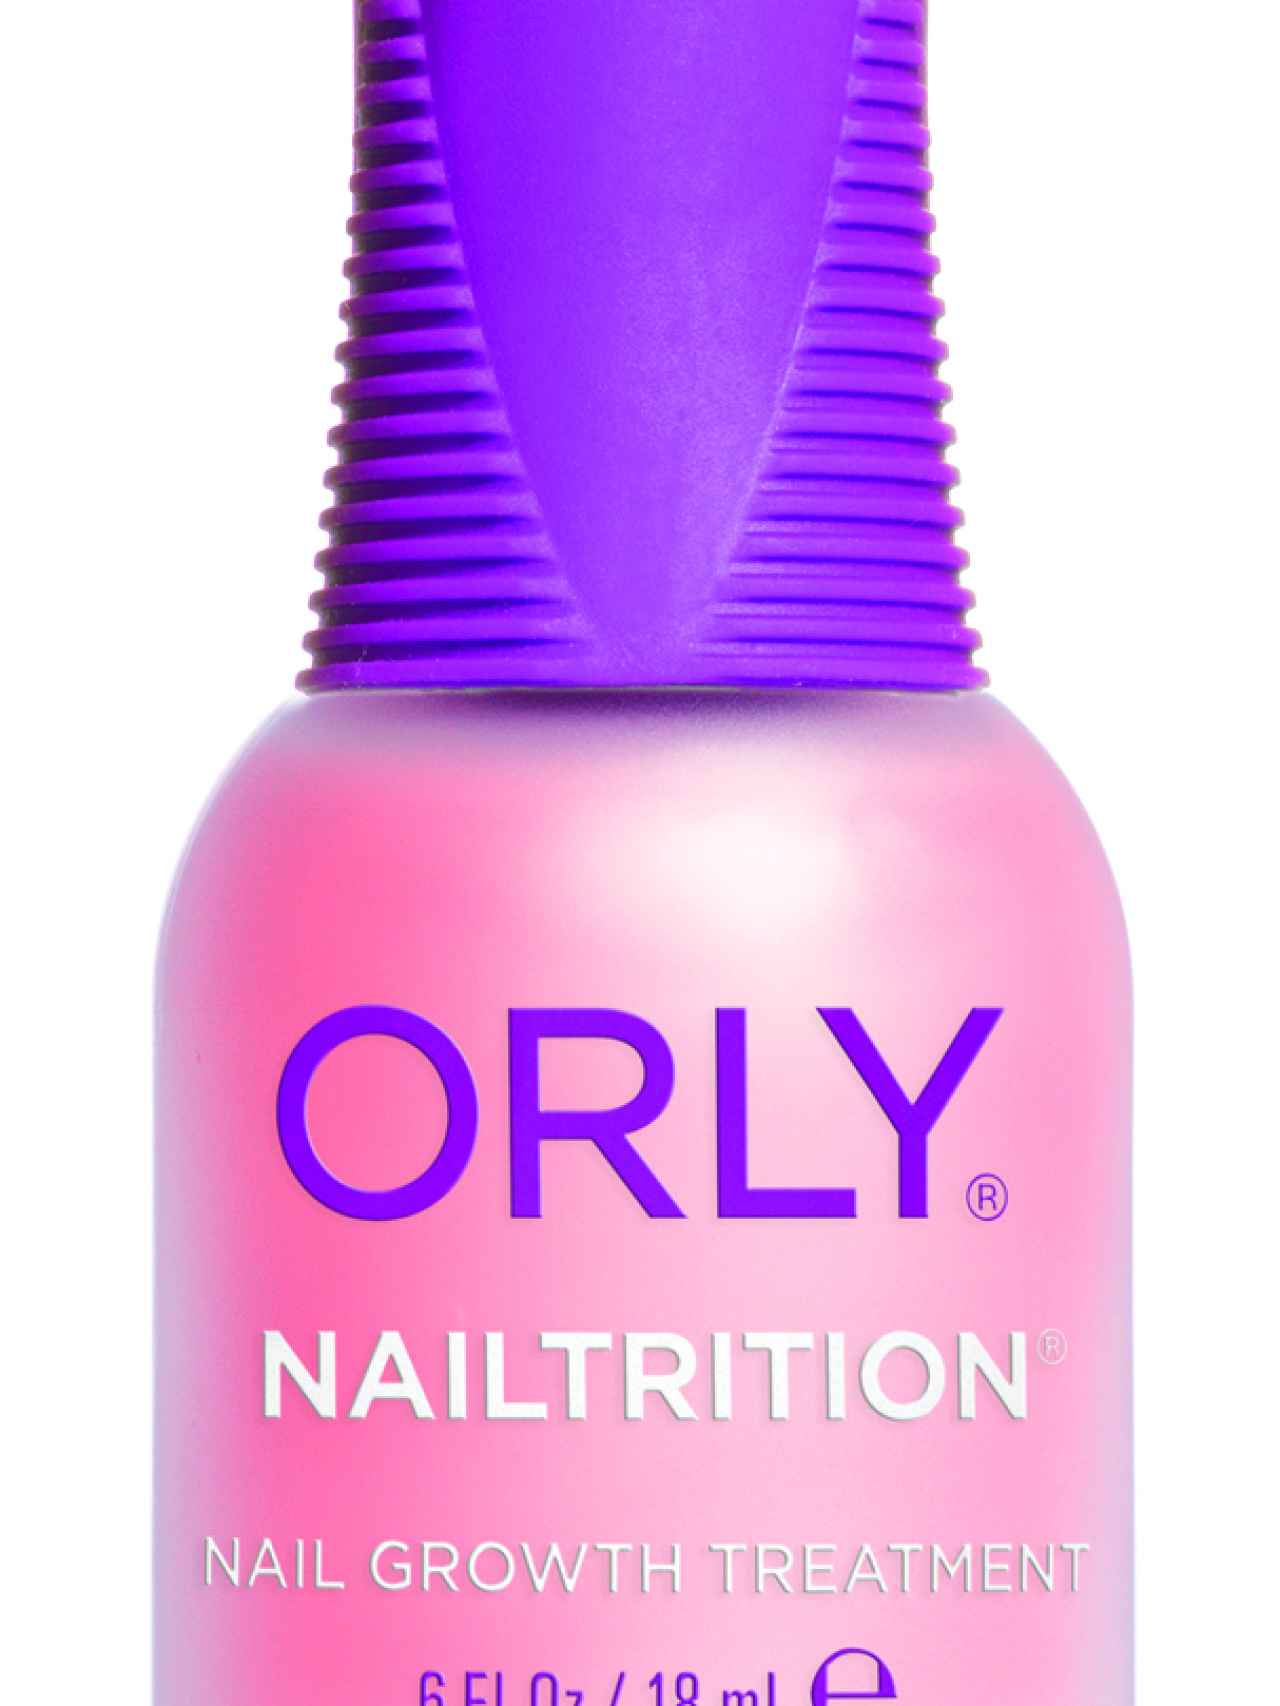 Nailtrition crecimiento uñas  (17,50€) de ORLY.